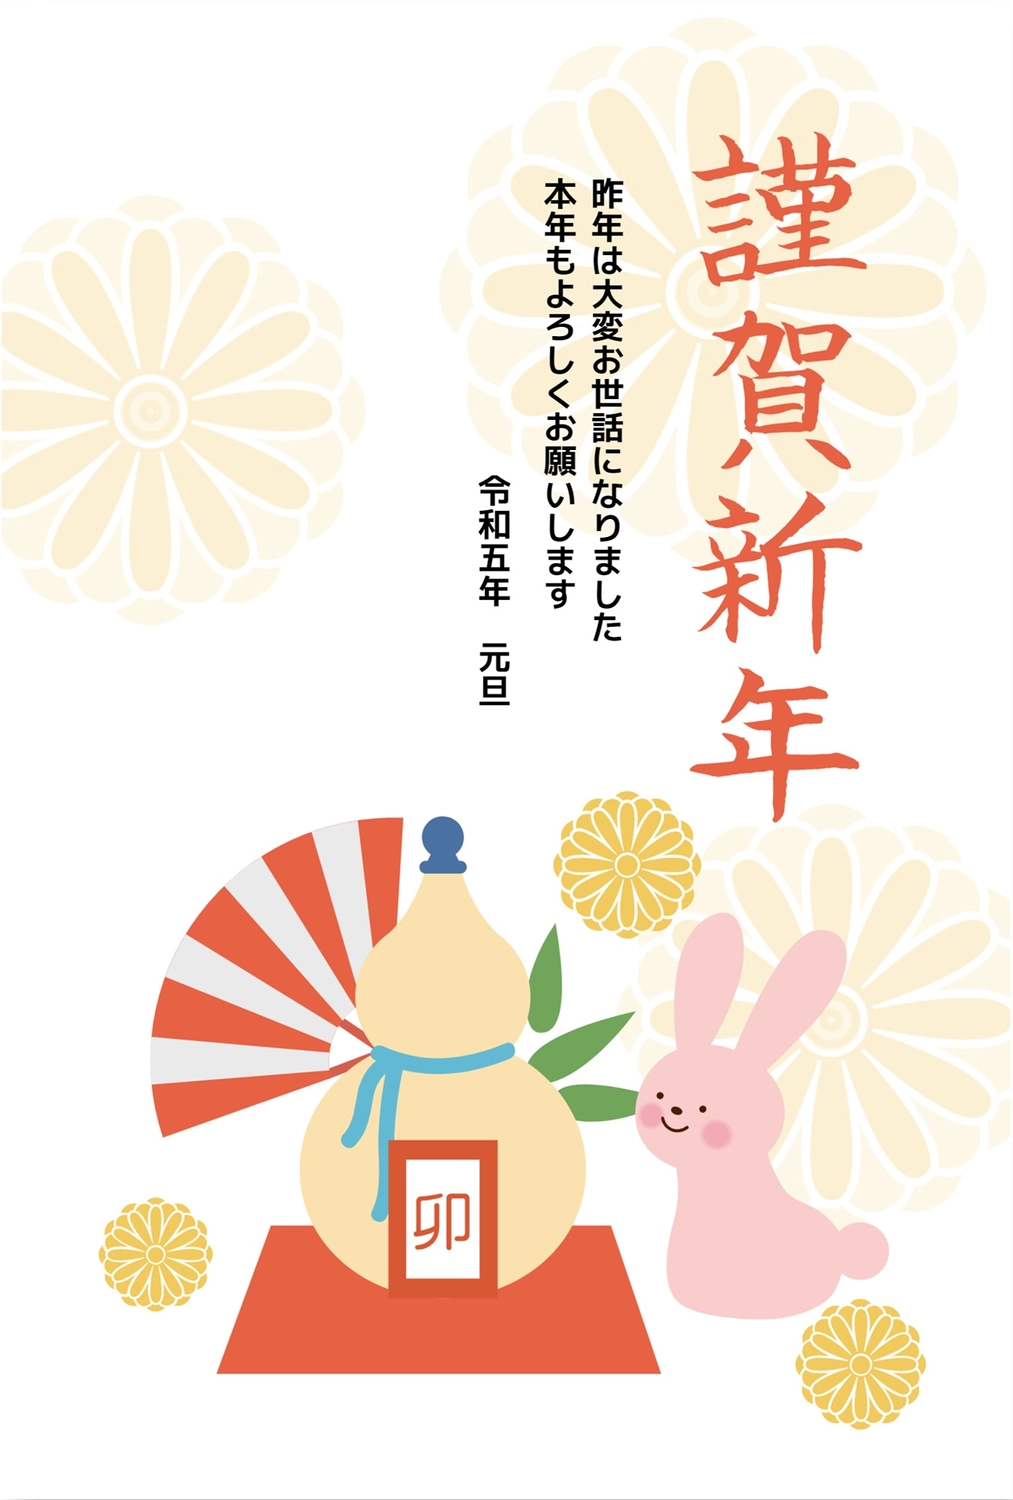 瓢箪とうさぎの年賀状, thú vật, 令和, Hình hoa, Thiệp năm mới mẫu